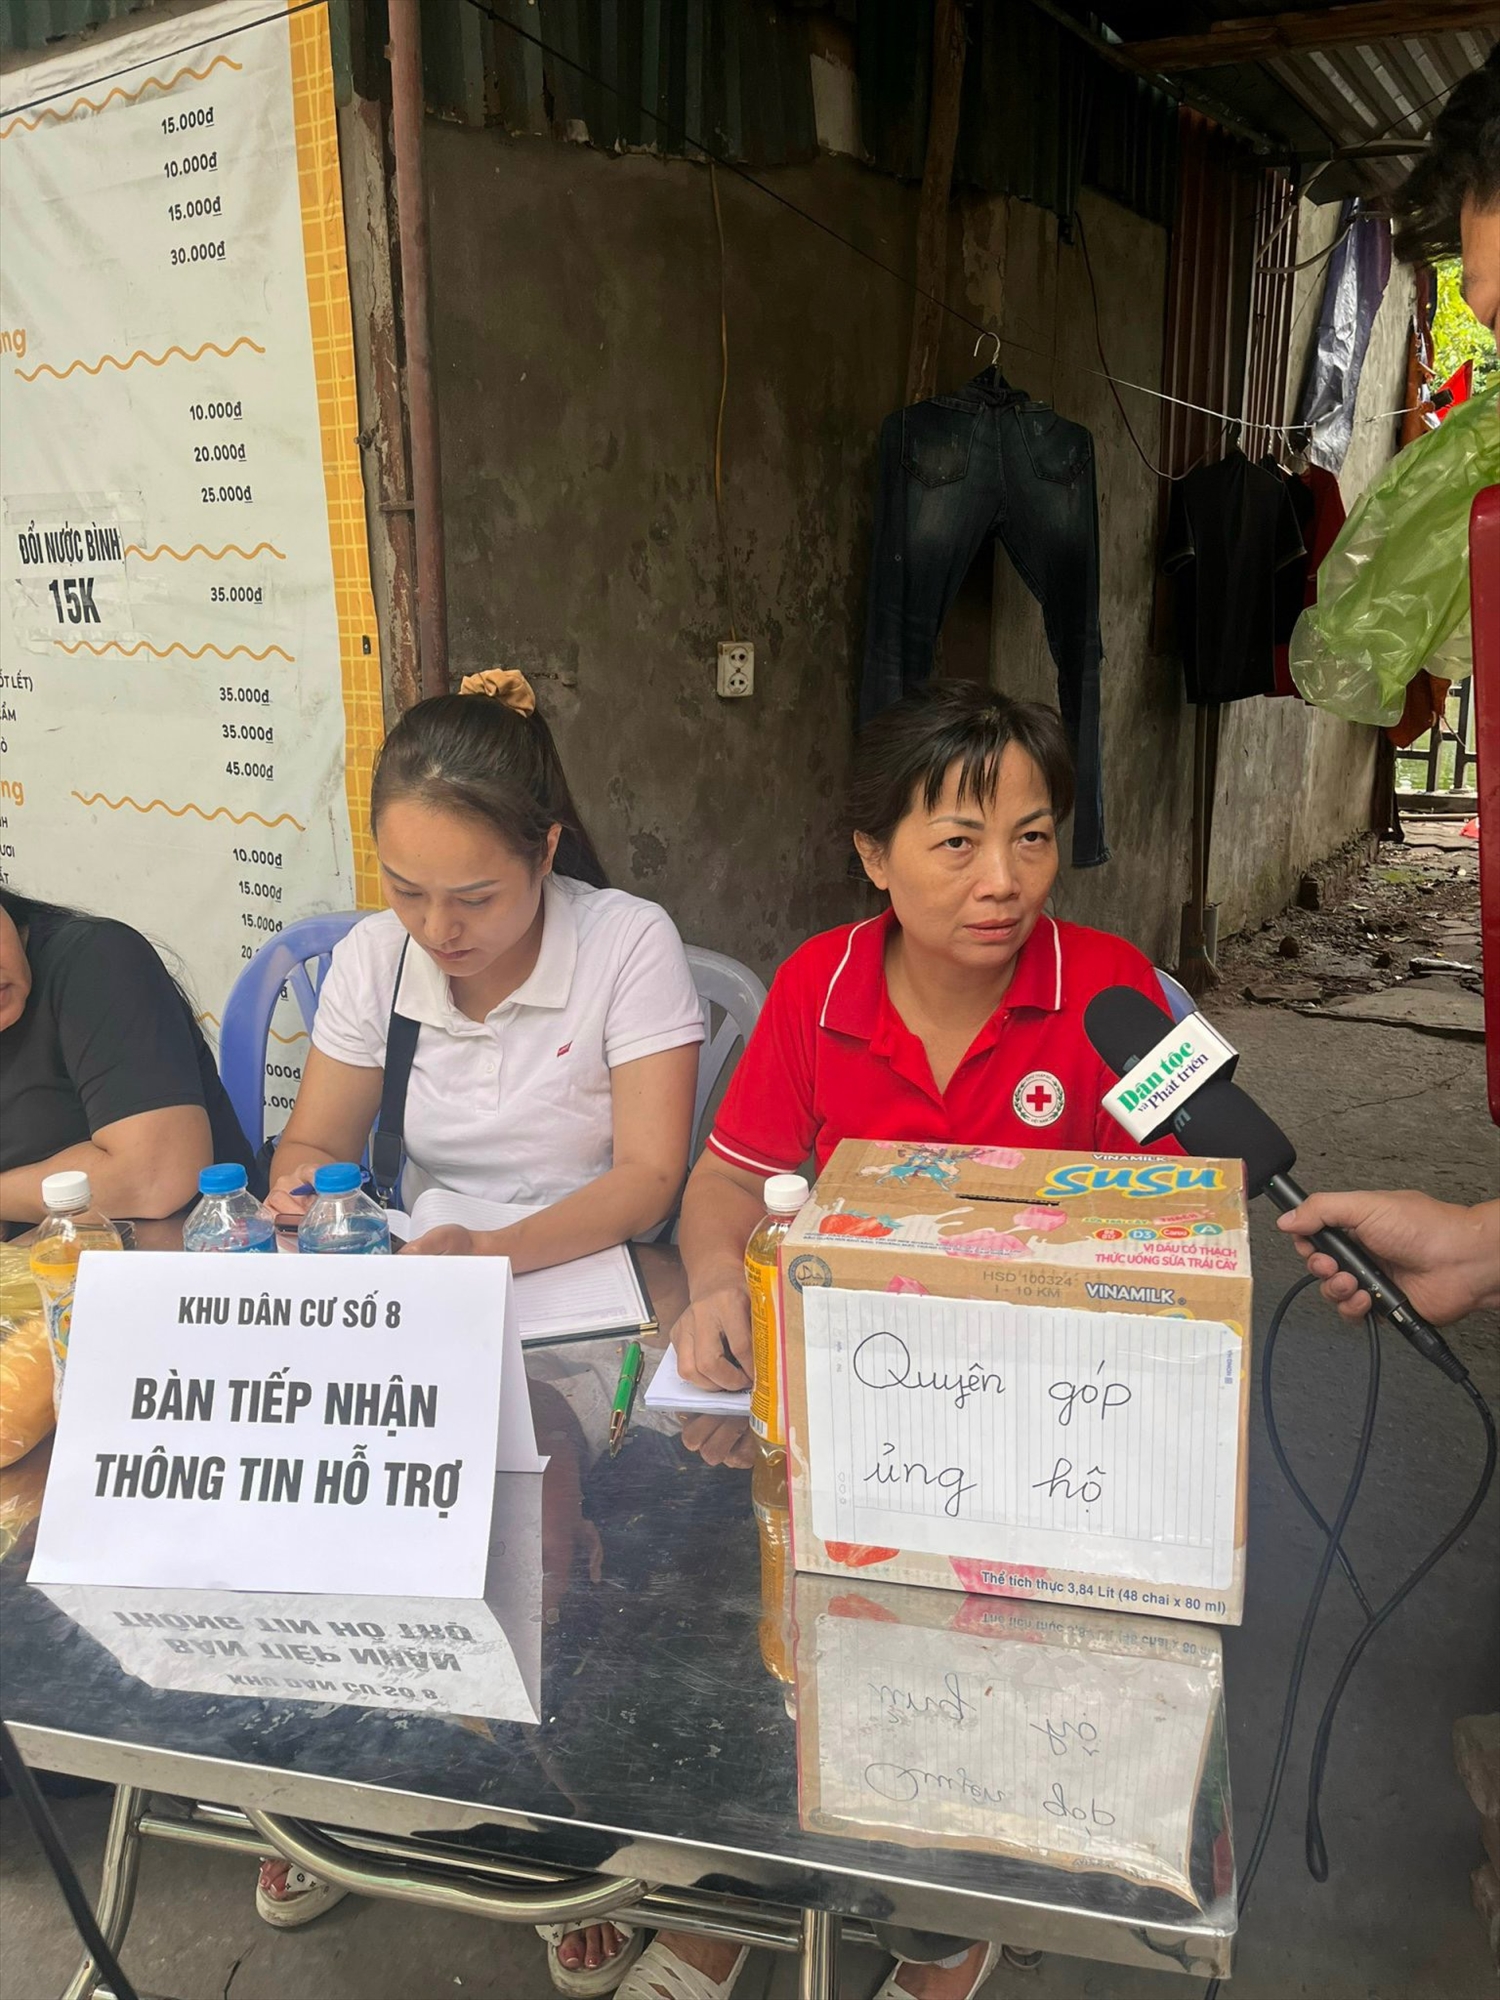 Theo bà Nguyễn Thị Thanh Hường, ngay khi nghe thông tin vụ cháy, cấp ủy chi bộ và các đoàn thể của khu dân cư đã chủ động lập bàn tiếp nhận thông tin, kịp thời hỗ trợ các nạn nhân